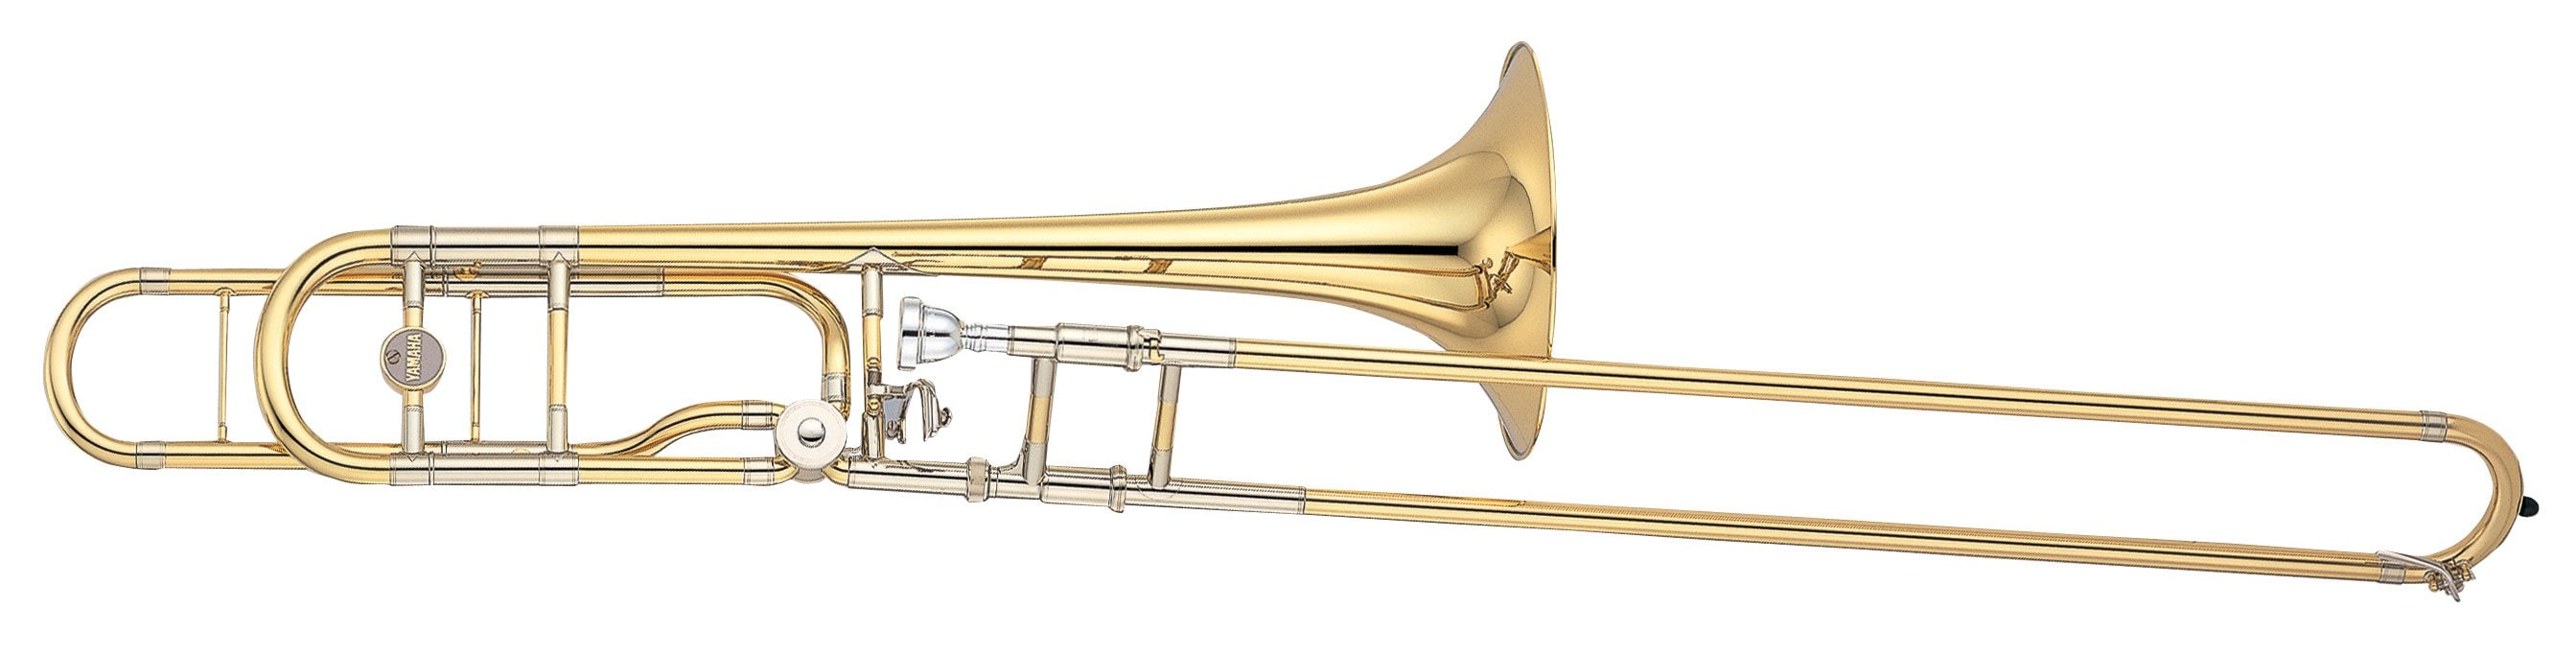 YSL-882O Xeno Tenor Trombone w/ F Attachment - Yamaha USA